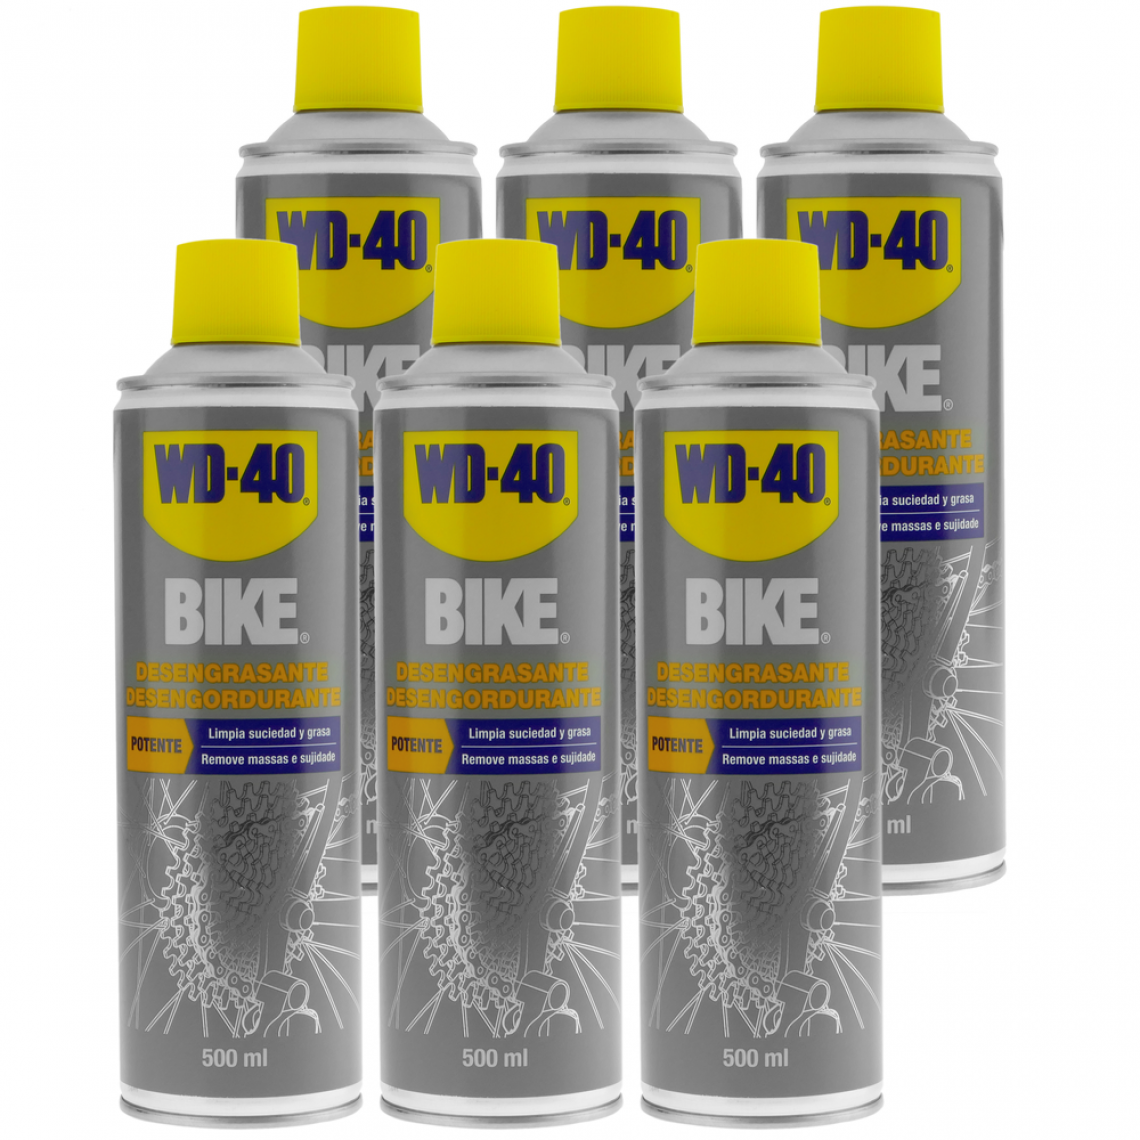 Wd-40 - Dégraissant BIKE 500 ml (boîte de 6 unités) - Mastic, silicone, joint